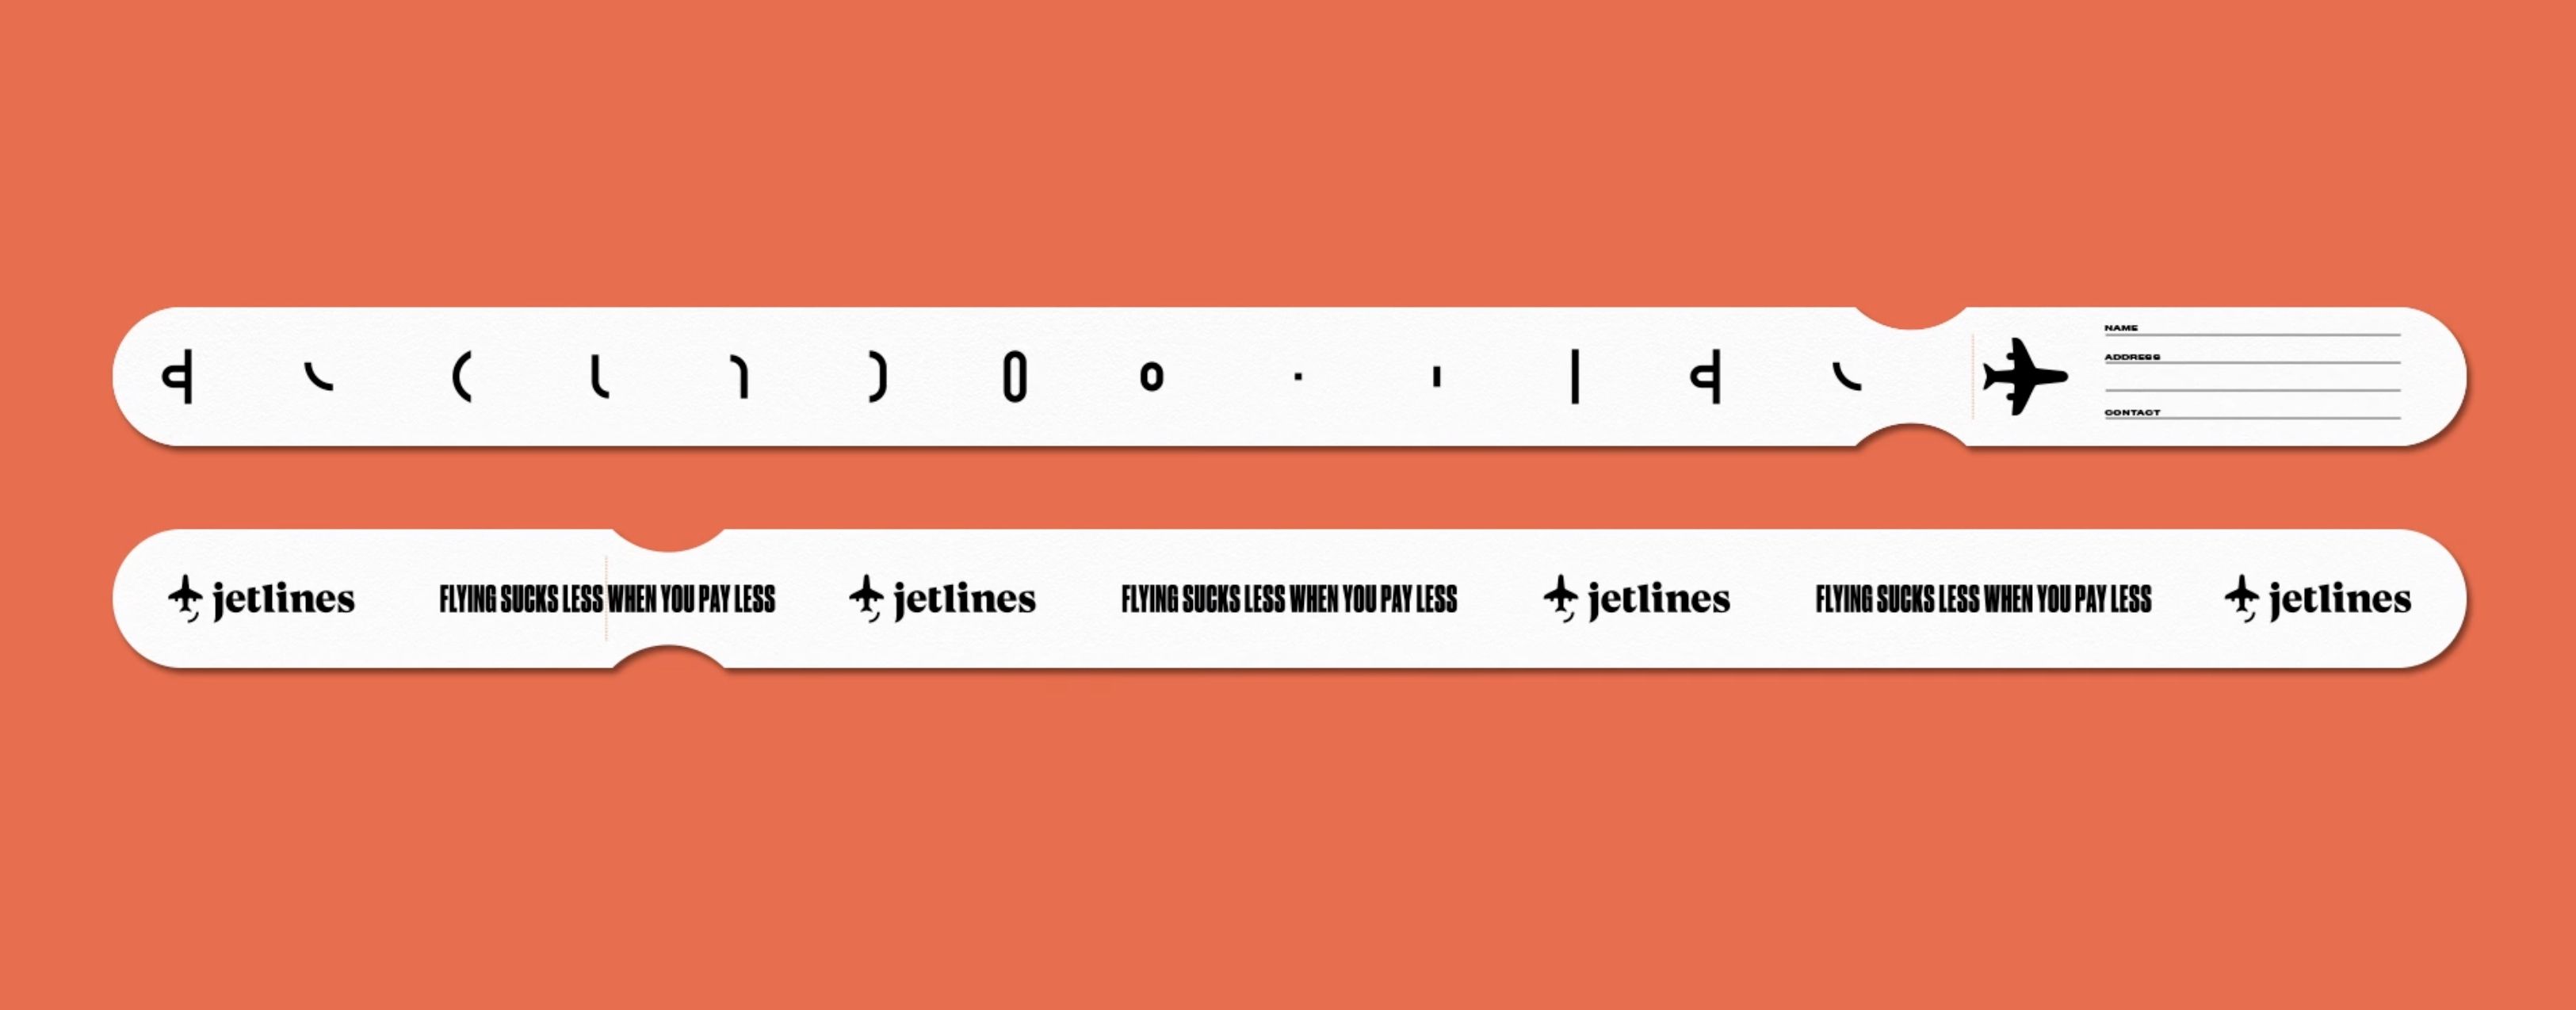 加拿大廉价航空Jetlines推出有趣新Logo